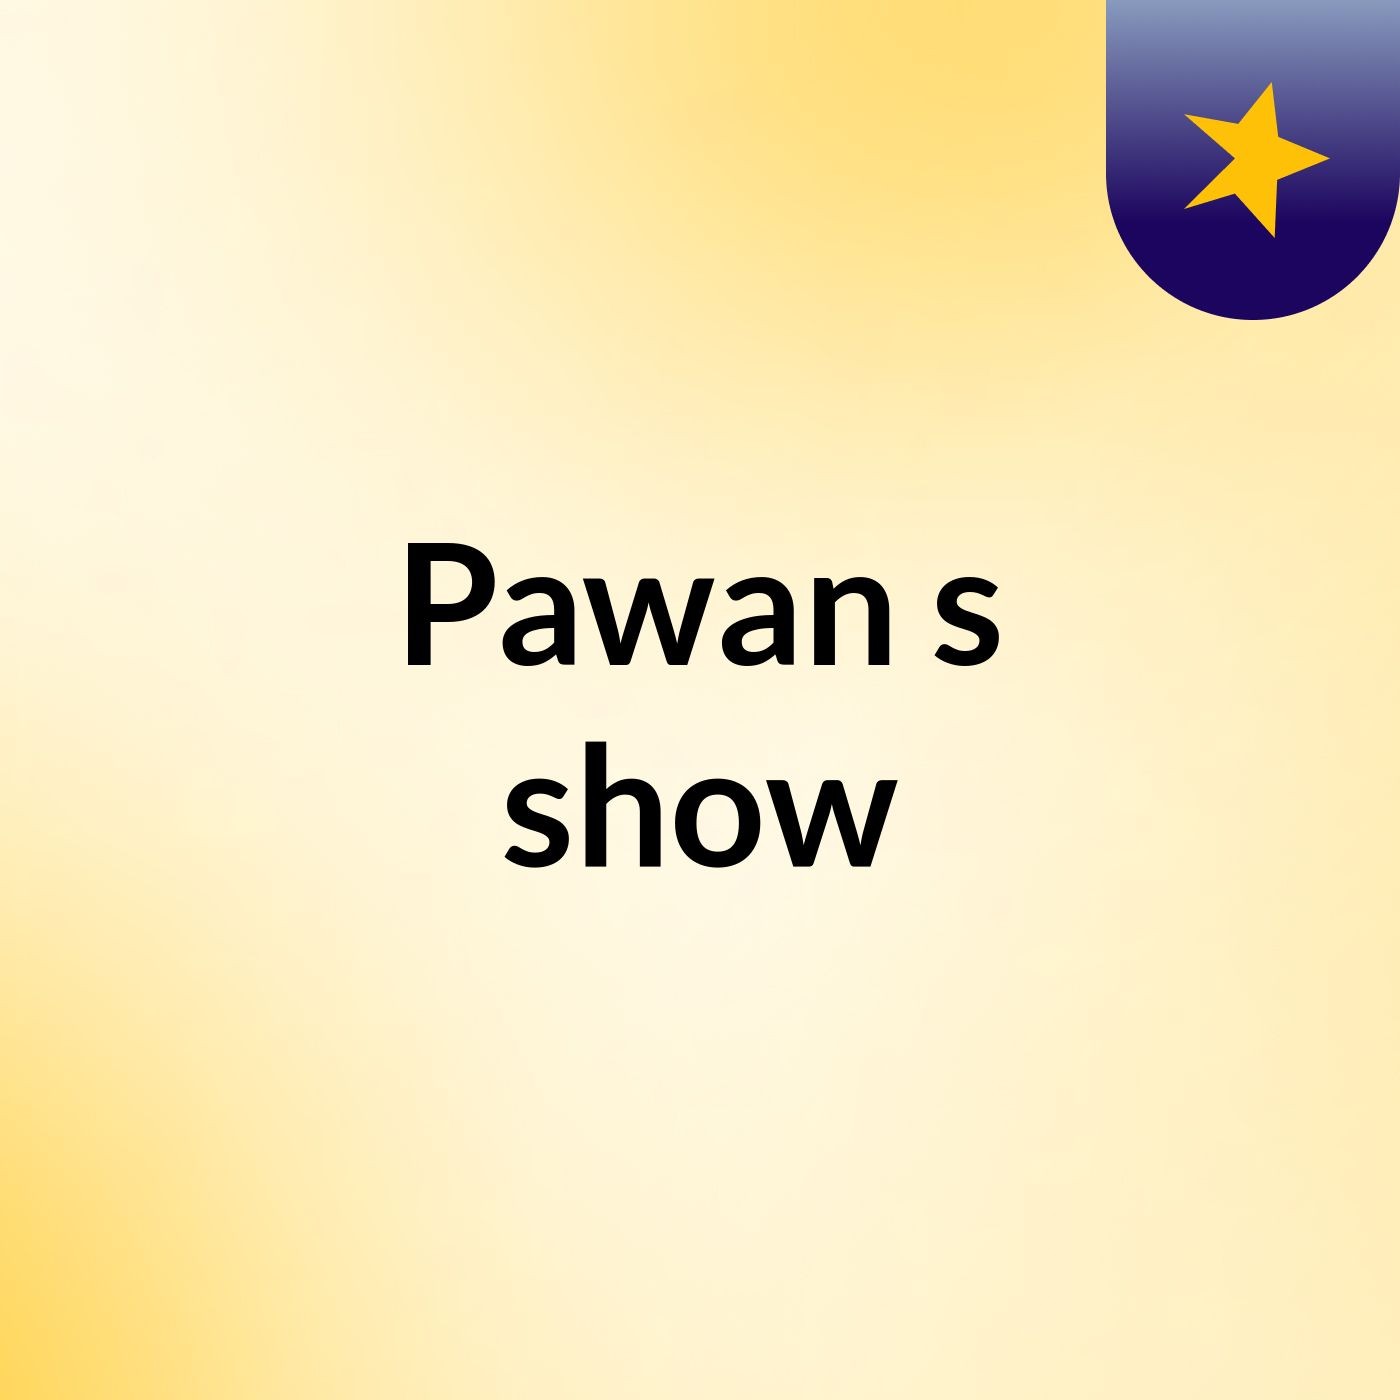 Pawan's show